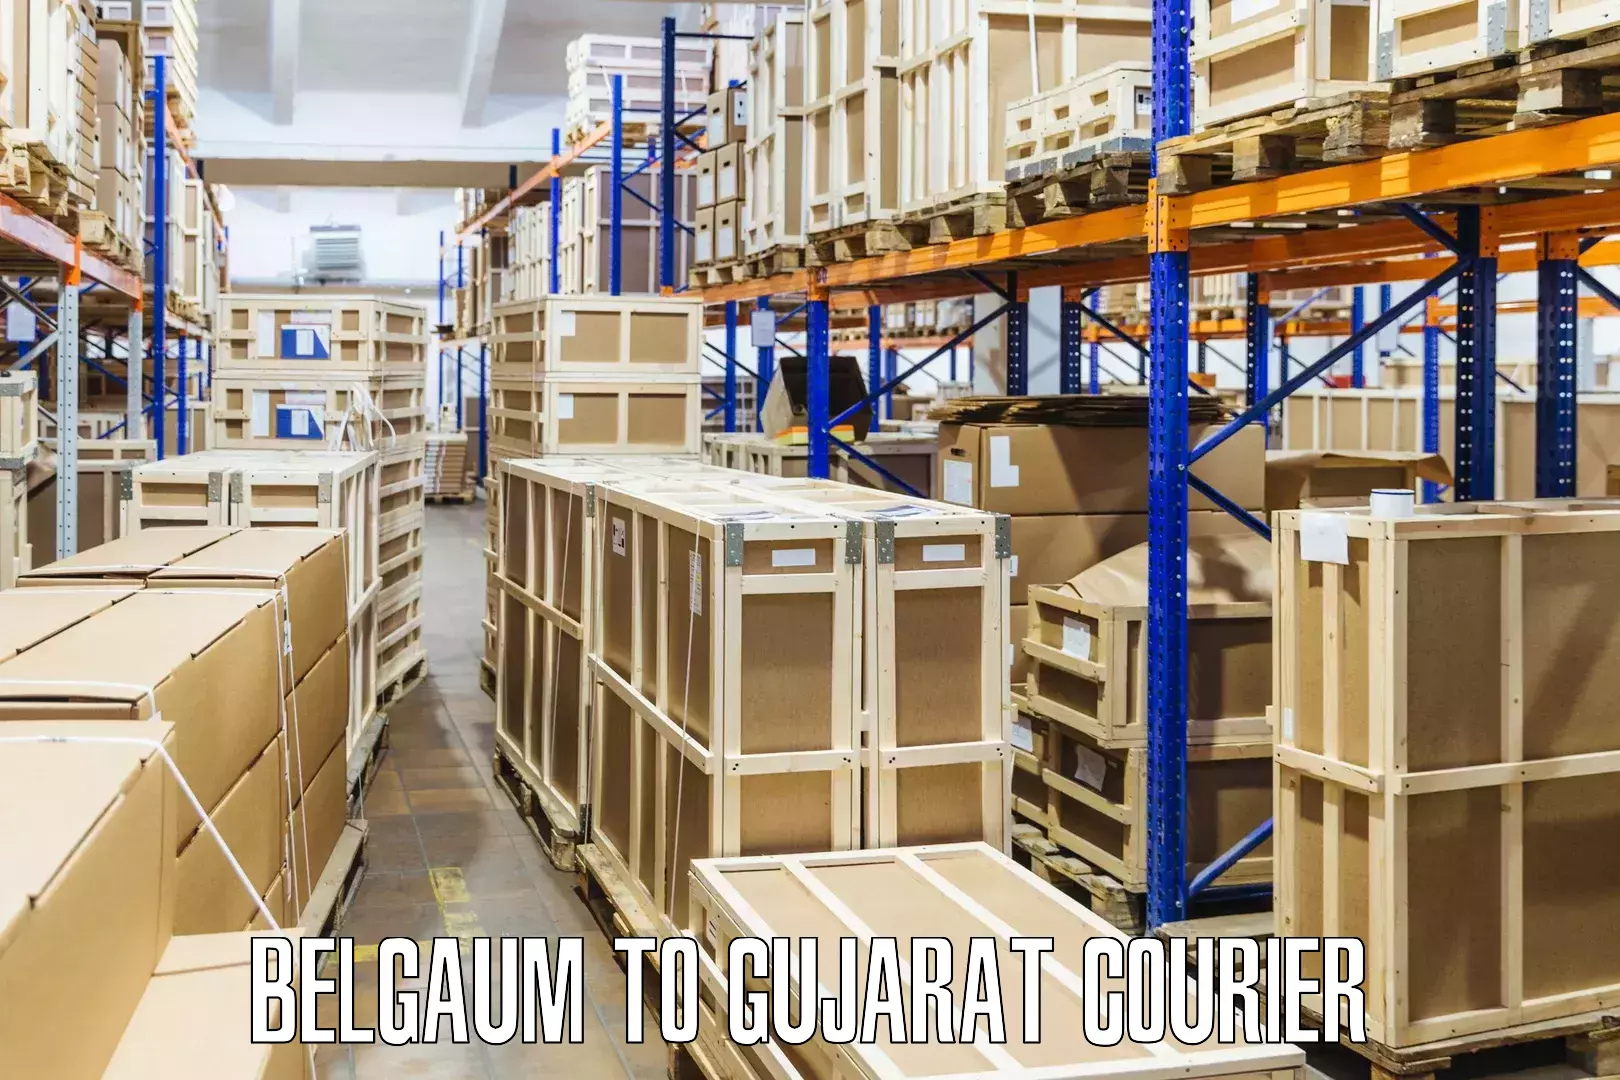 Door-to-door freight service Belgaum to Patan Gujarat